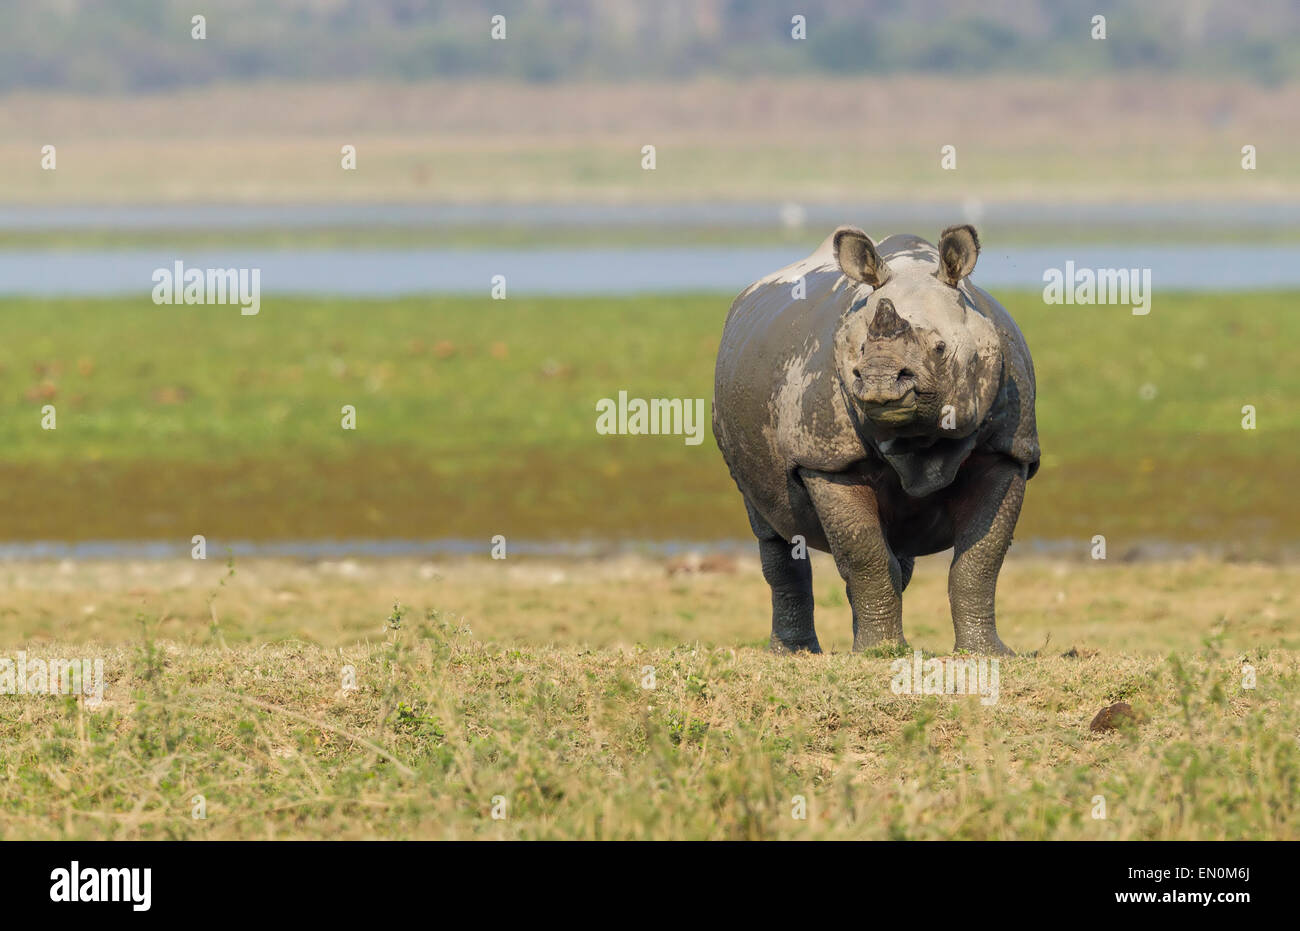 Disparition d'un rhinocéros unicornes ou Rhinoceros unicornis au parc national de Kaziranga, Assam dans une prairie en dehors de l'eau Banque D'Images